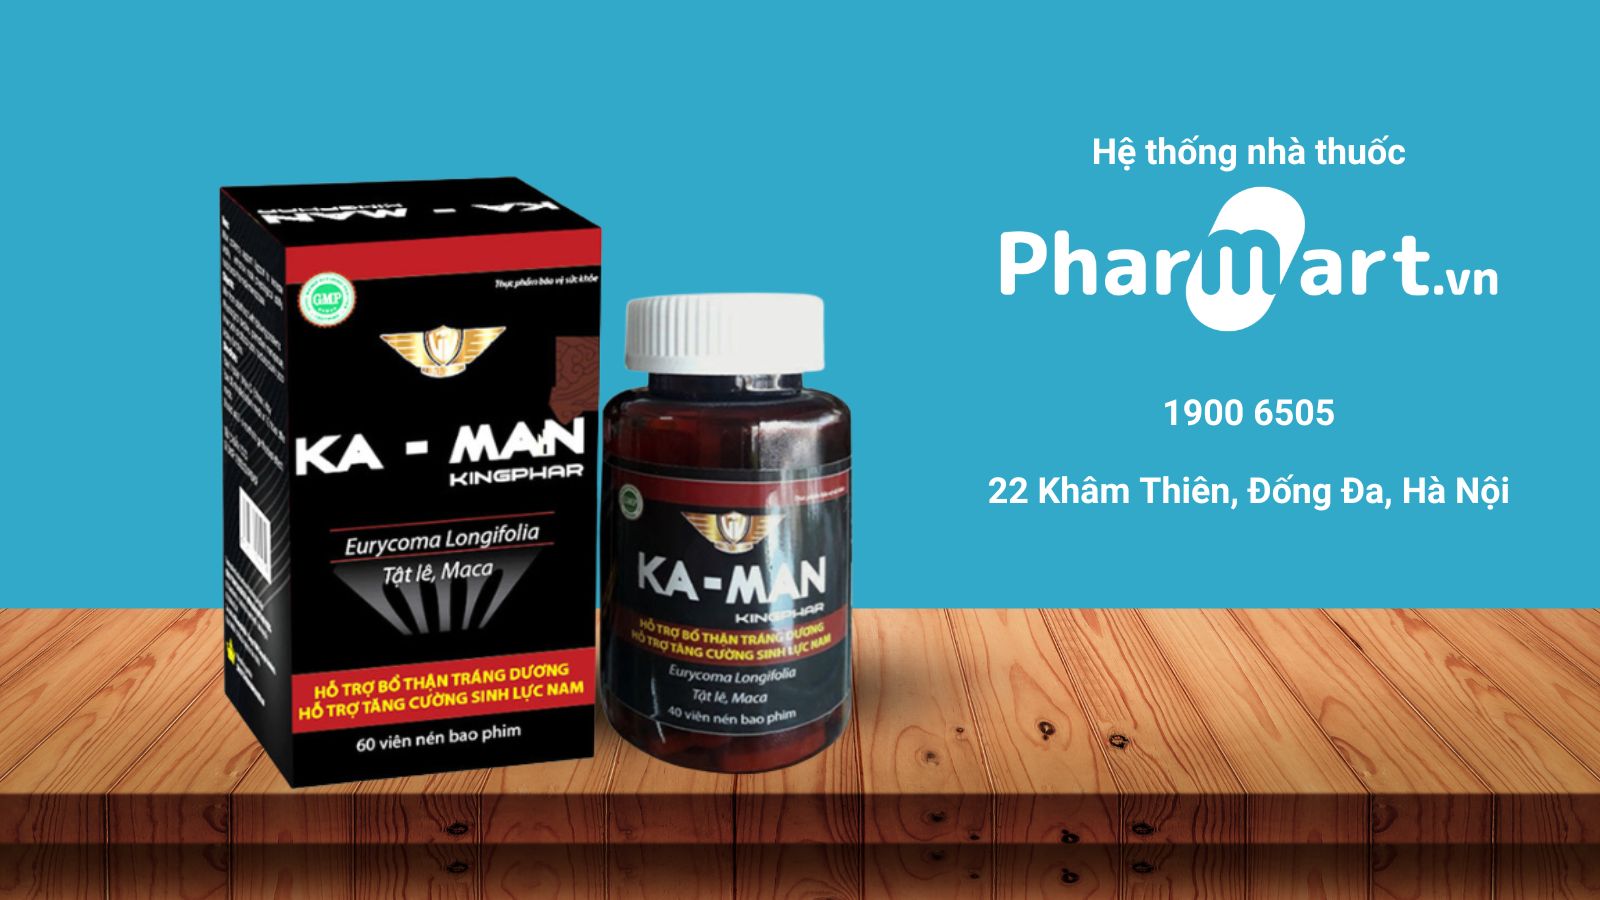 Pharmart.vn là địa chỉ uy tín cung cấp viên uống Ka Man chính hàng